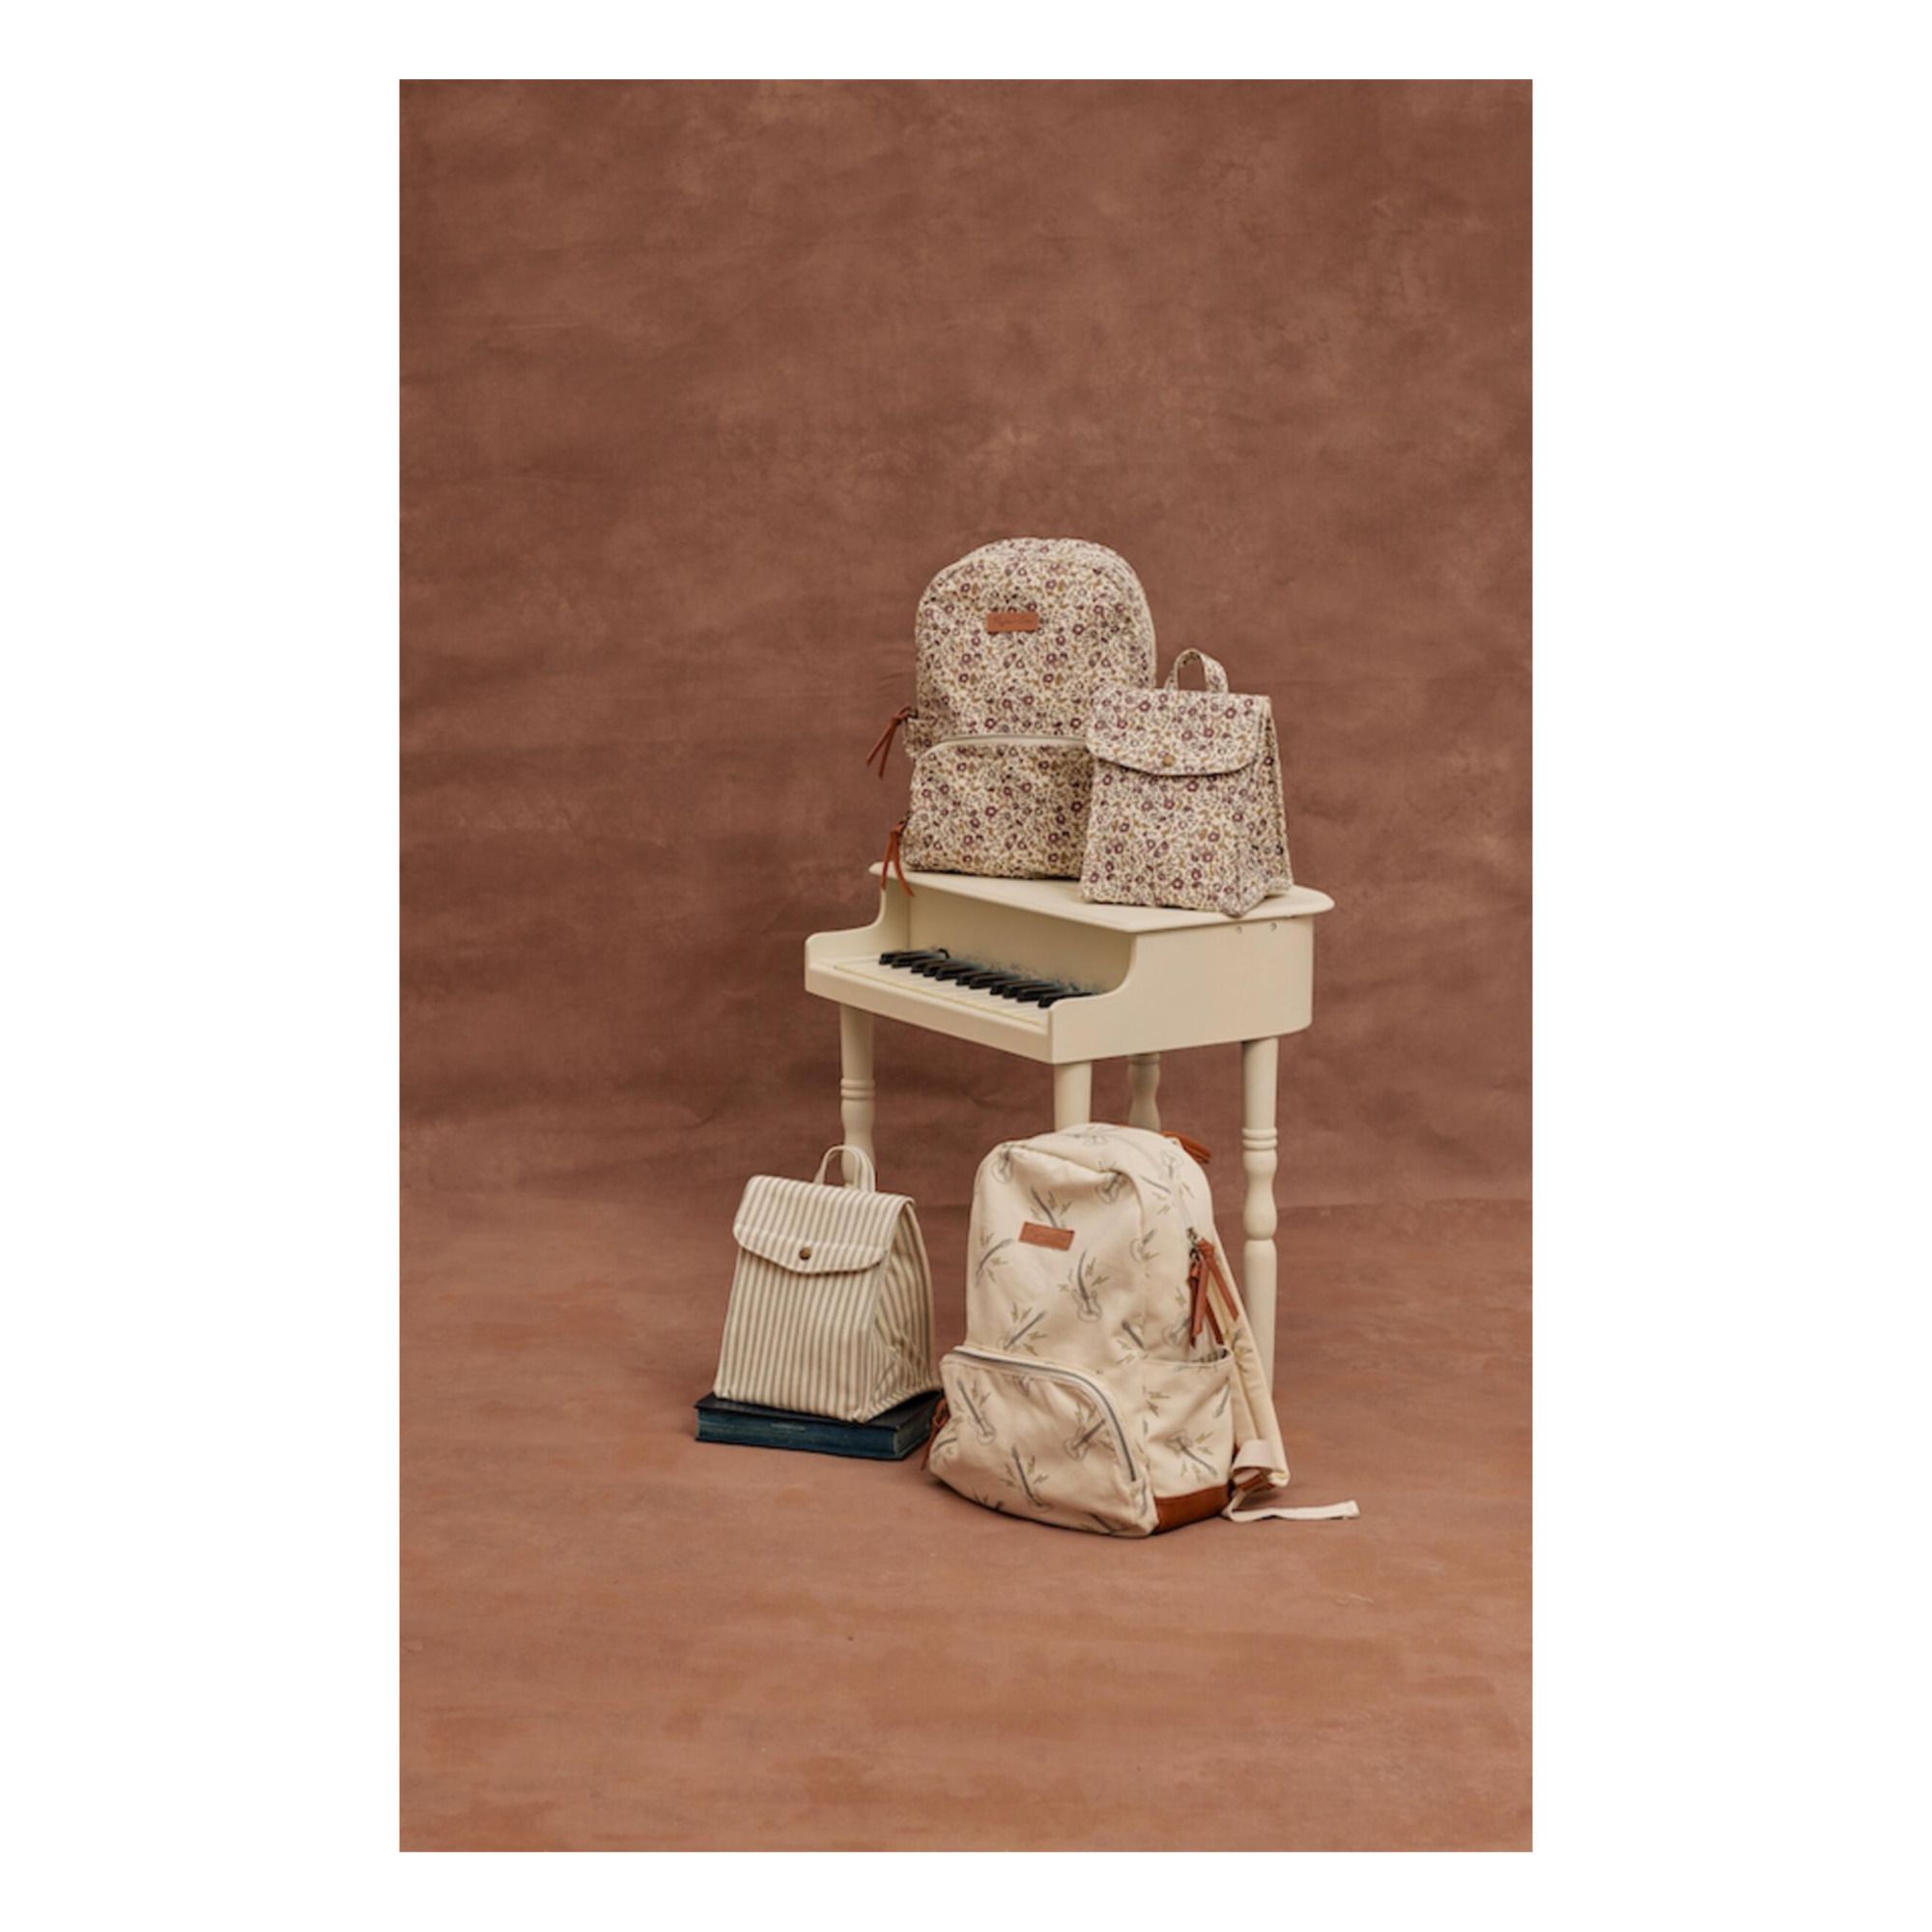 Rylee & Cru Mini Backpack, Flower Block